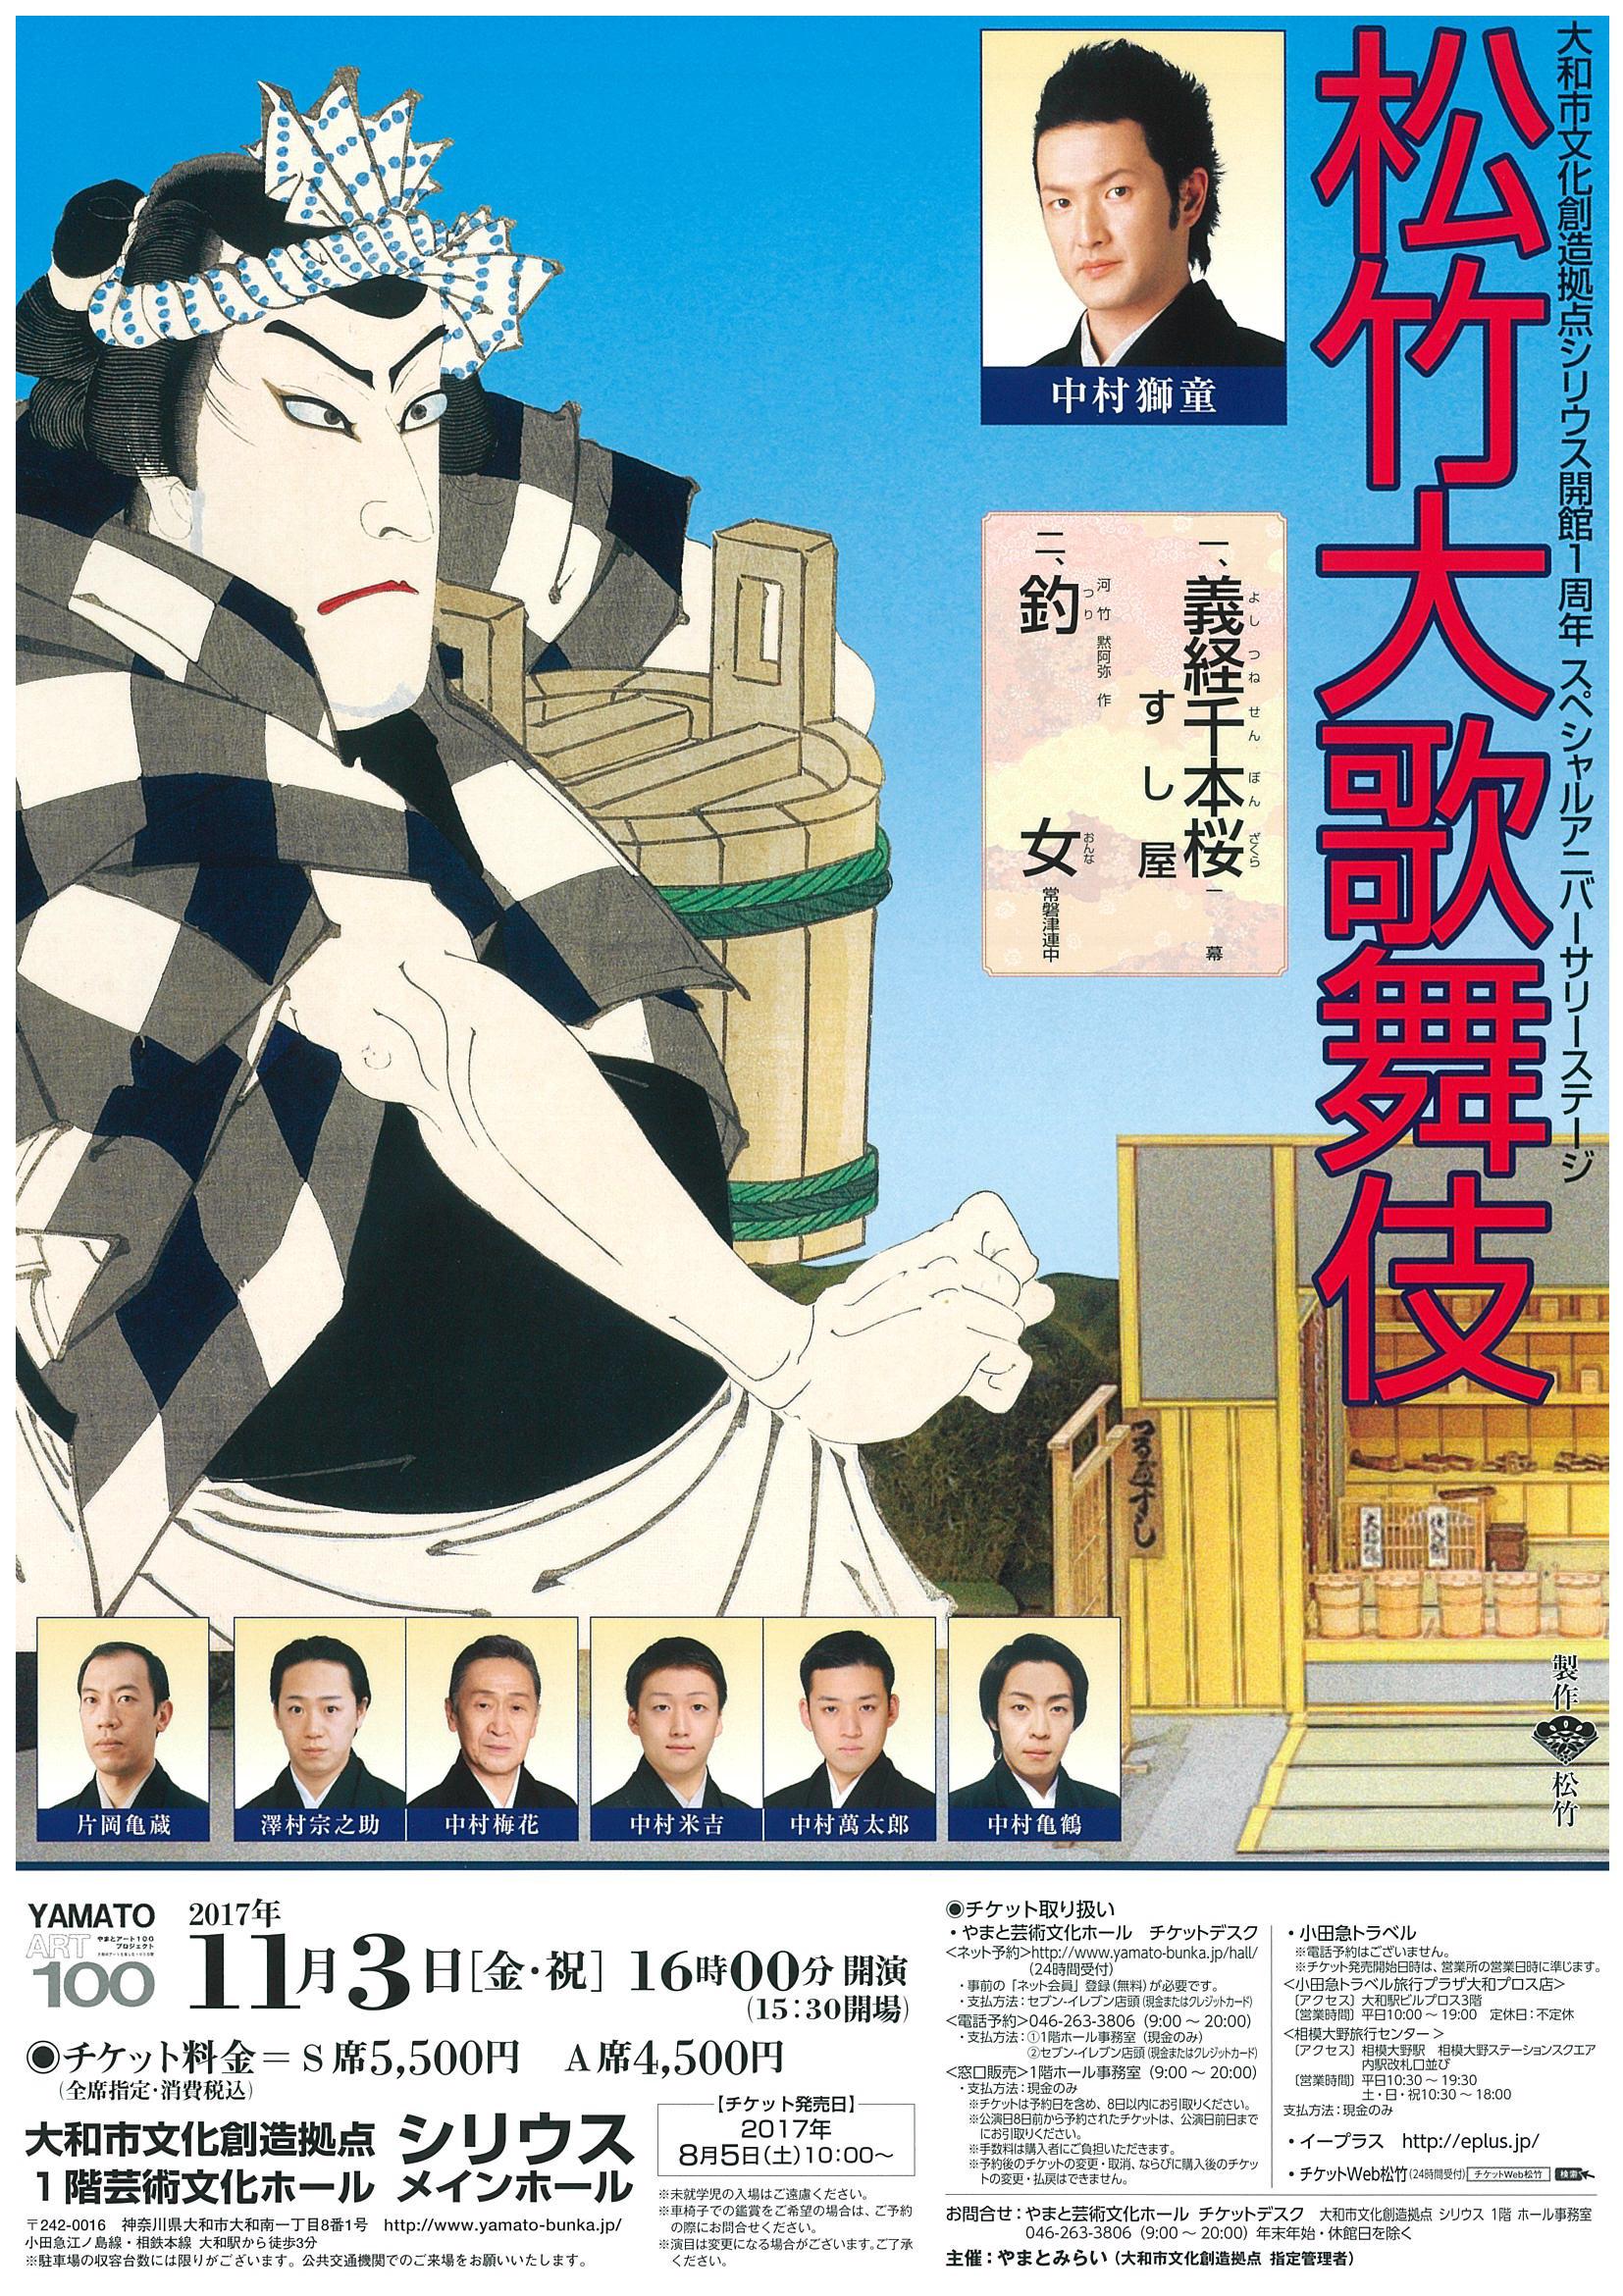 大和市文化創造拠点シリウス開館1周年 スペシャルアニバーサリーステージ「松竹歌舞伎」